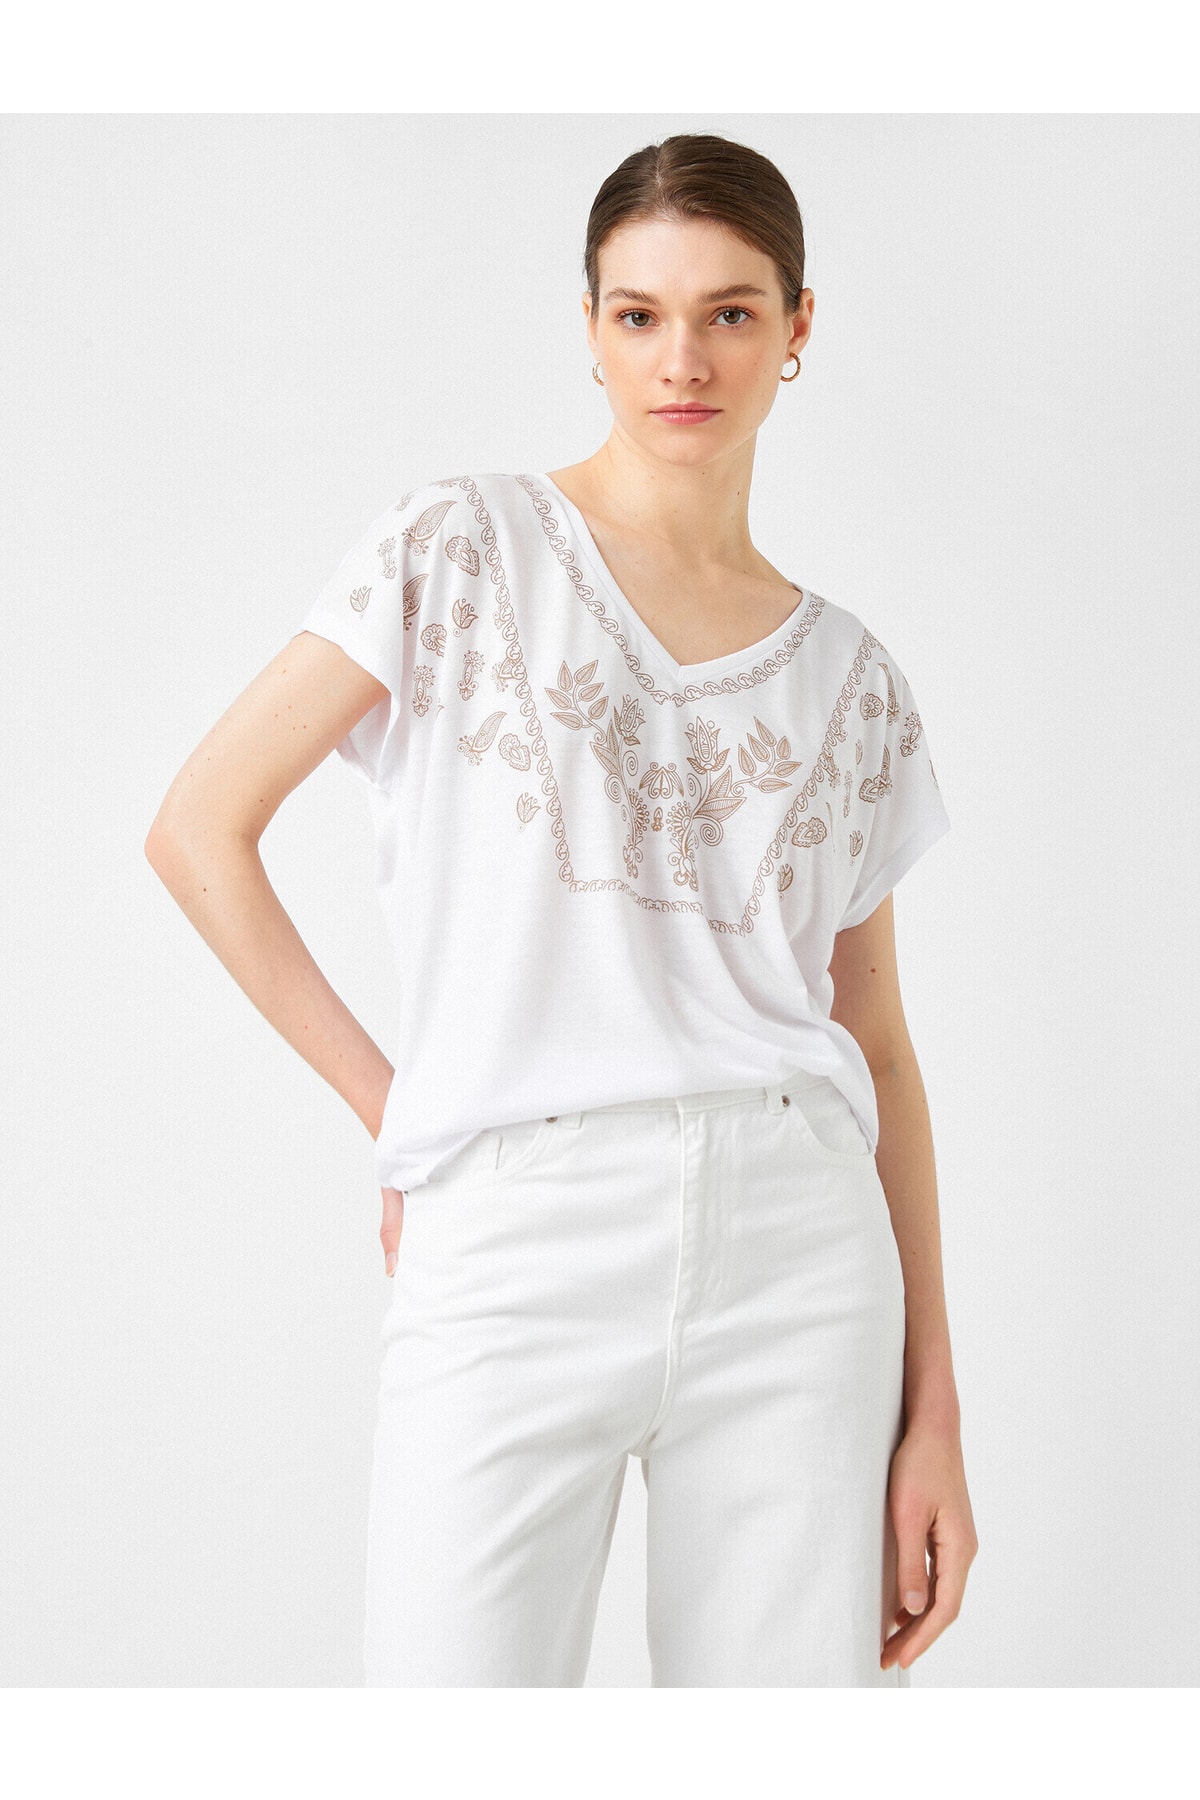 Koton T-Shirt Weiß Regular Fit